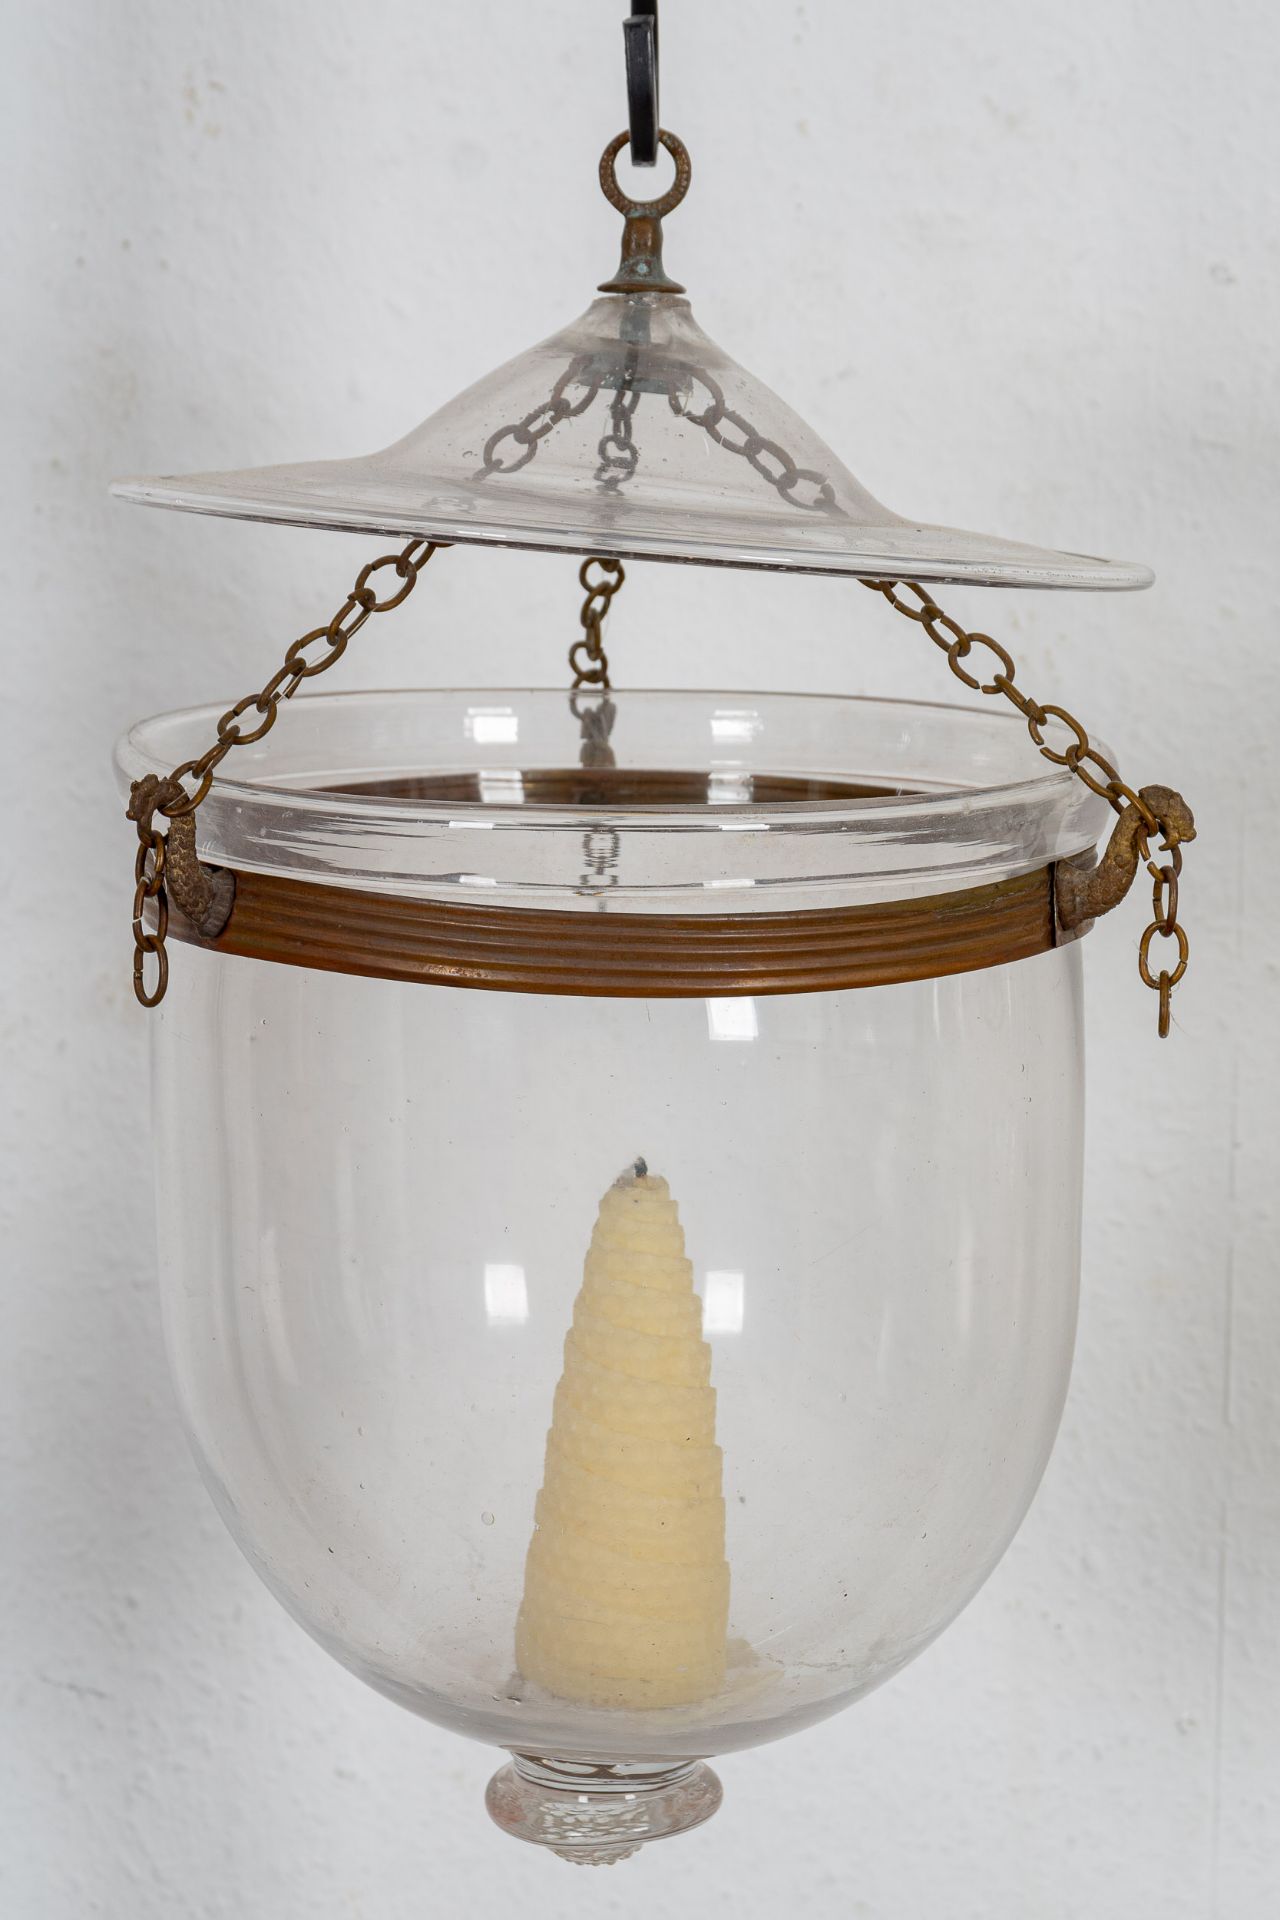 Antike Flurlampe für Kerzenfeuerung, zylindrischer, farbloser Glaskörper an metallischer Kettenaufh